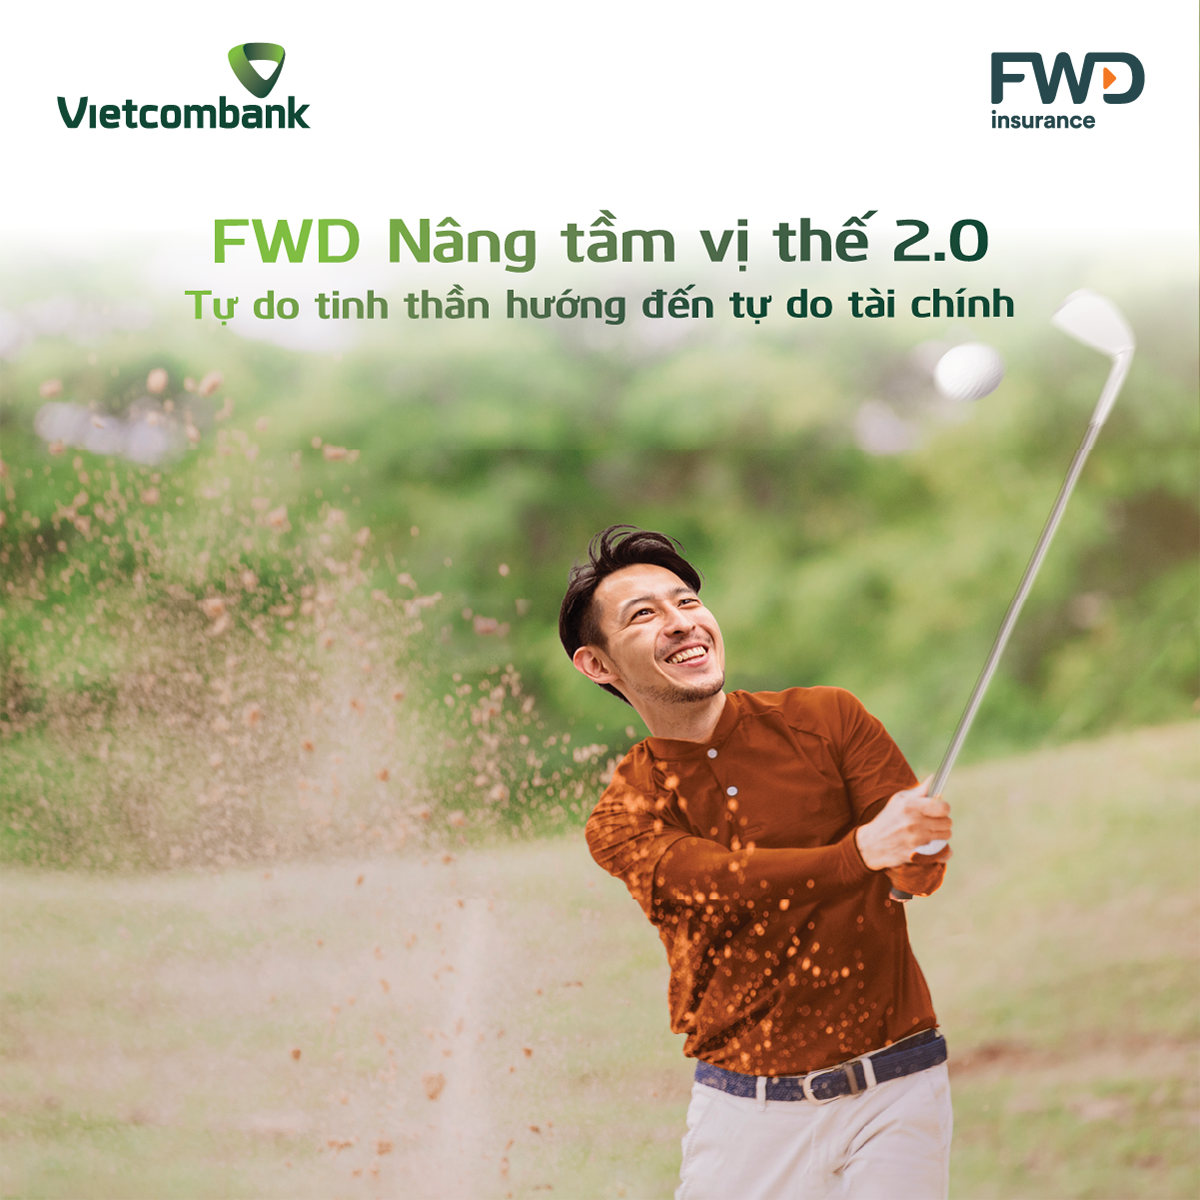 Vietcombank phối hợp với FWD ra mắt bảo hiểm liên kết đầu tư